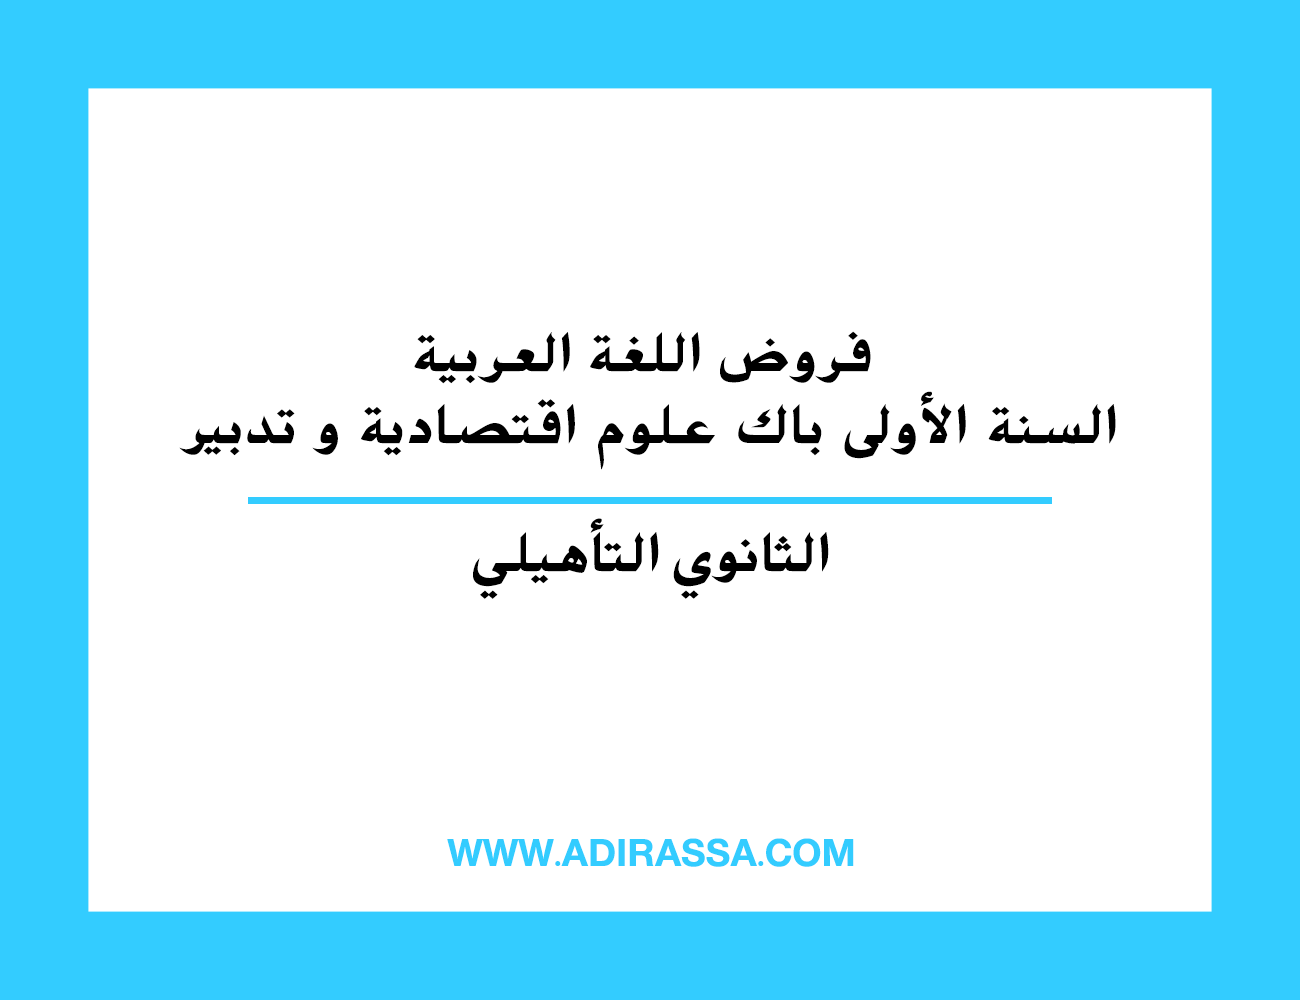 فروض اللغة العربية السنة الأولى باك علوم اقتصادية و تدبير بالثانوي التأهيلي